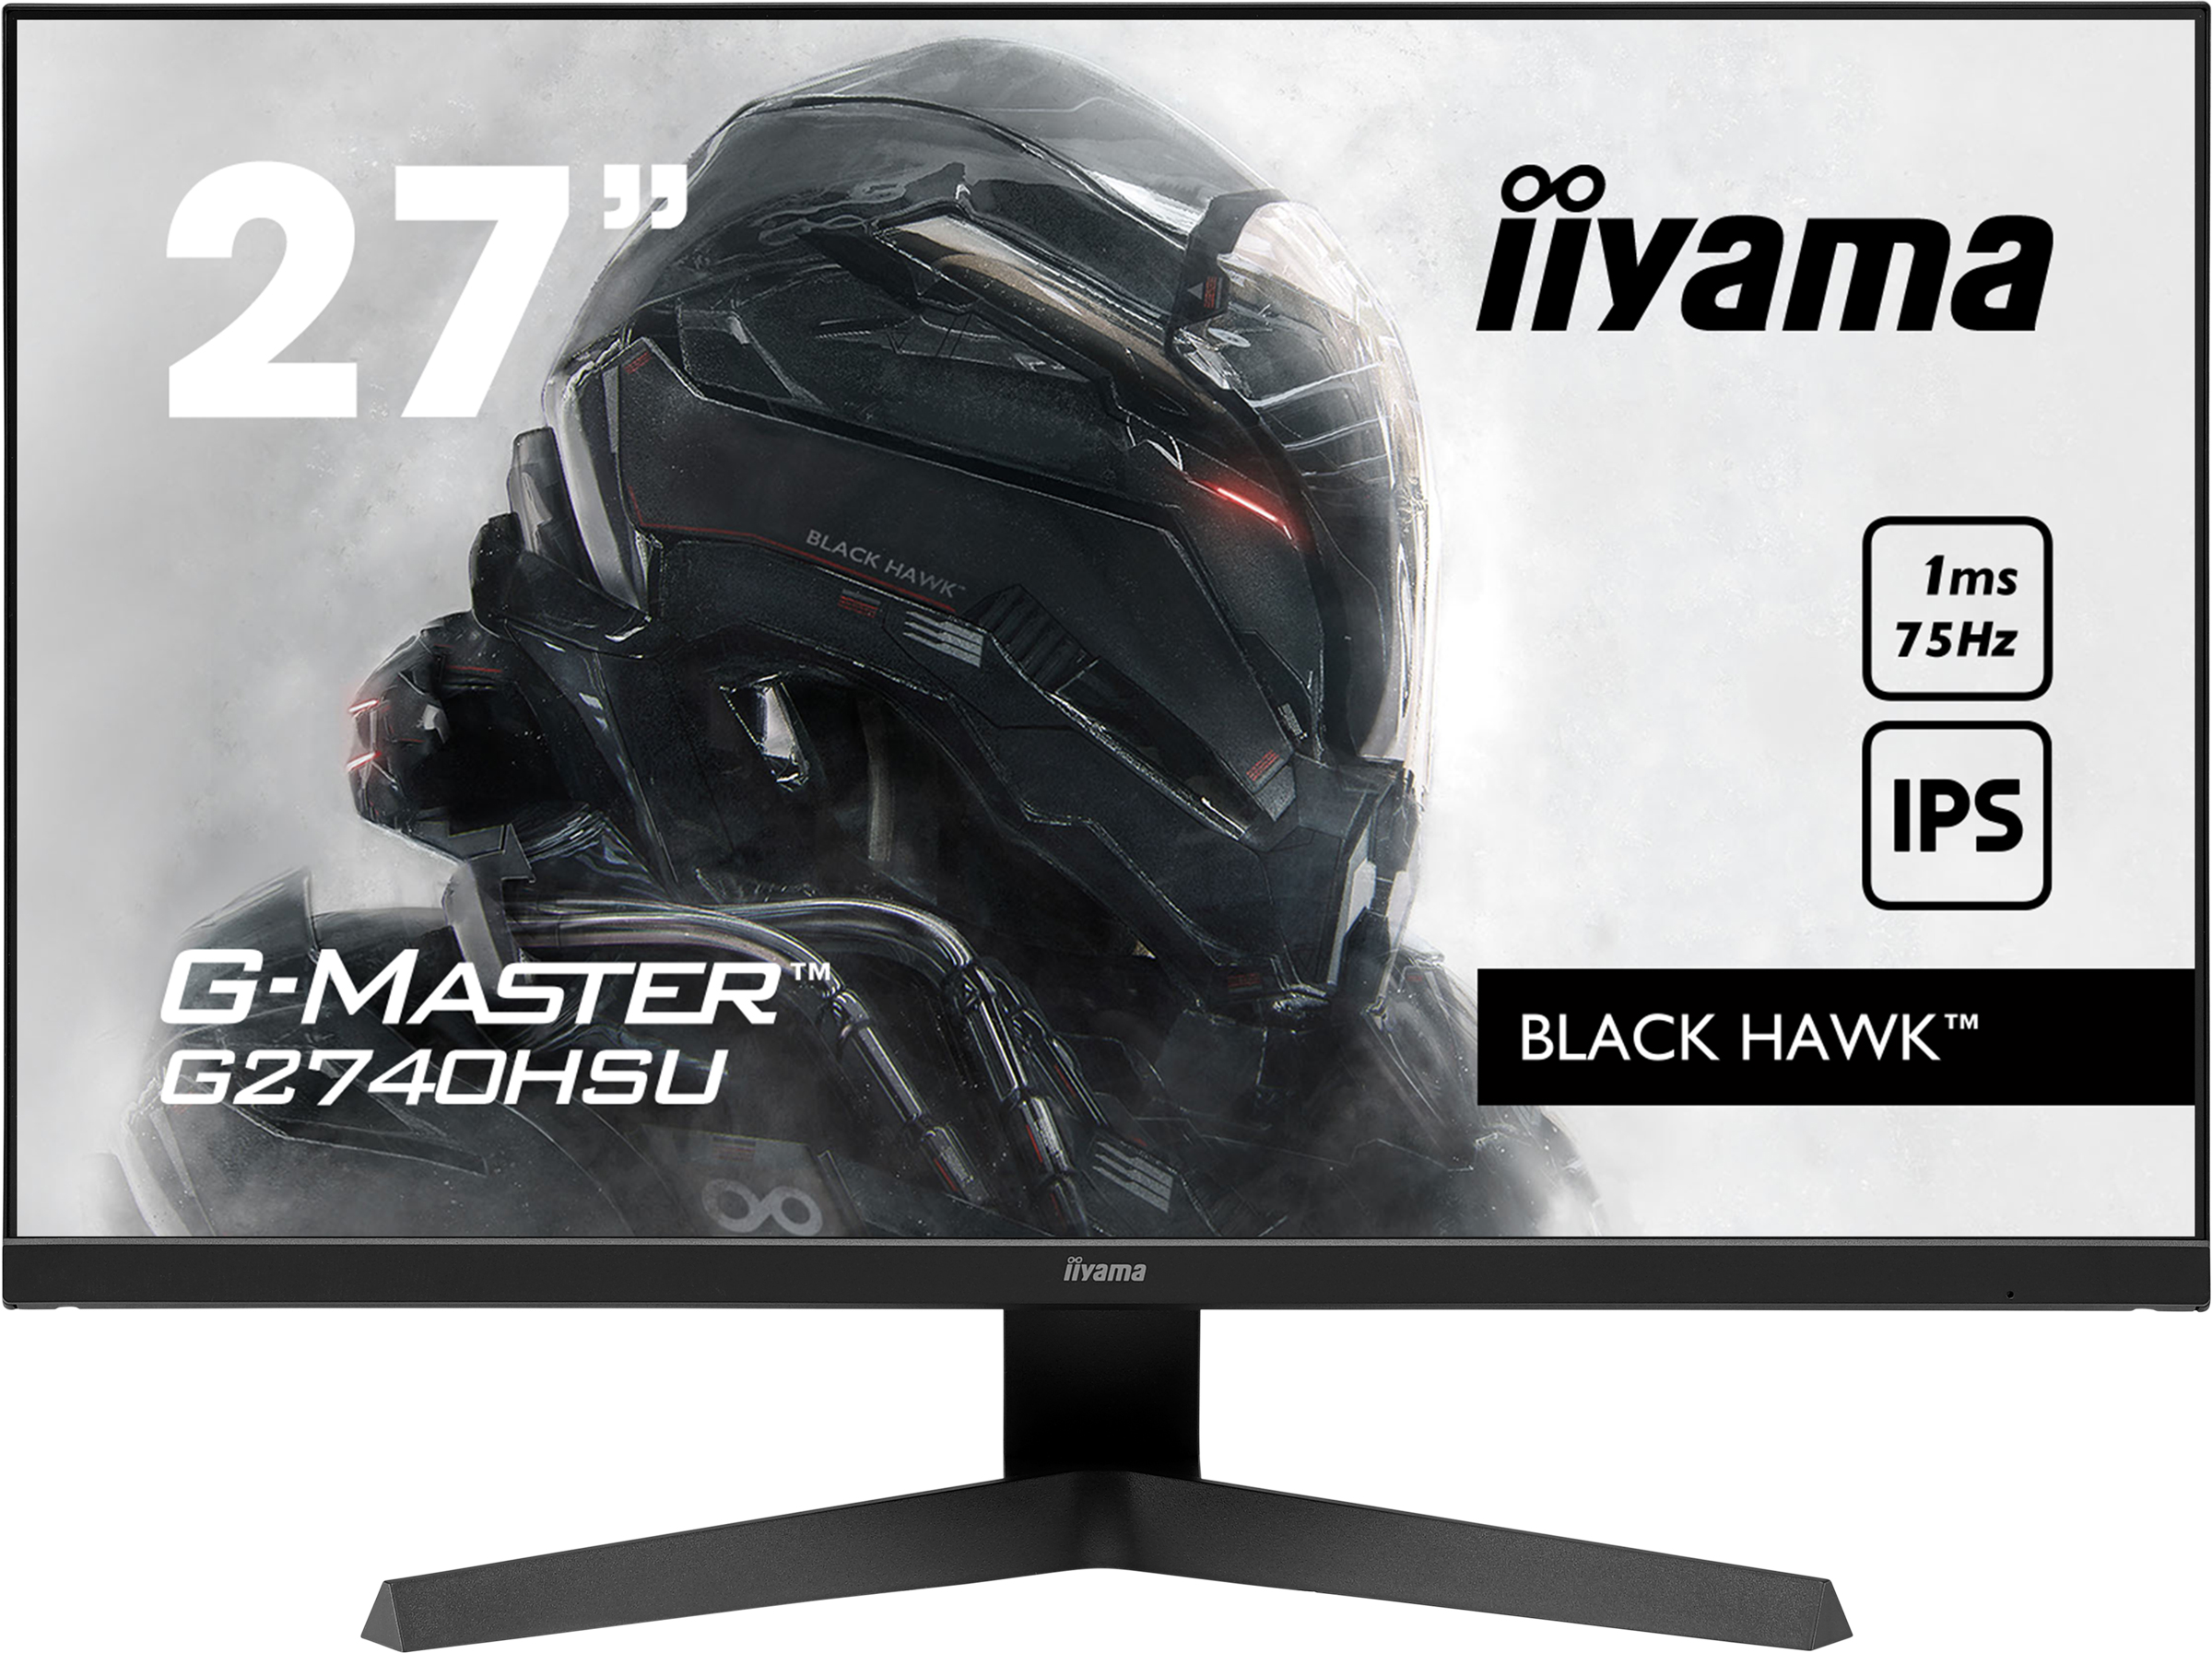 Iiyama G-MASTER G2740HSU-B1 BLACK HAWK | 27" | 1920 x 1080 @75Hz (2.1 megapixel Full HD) | Gaming Monitor